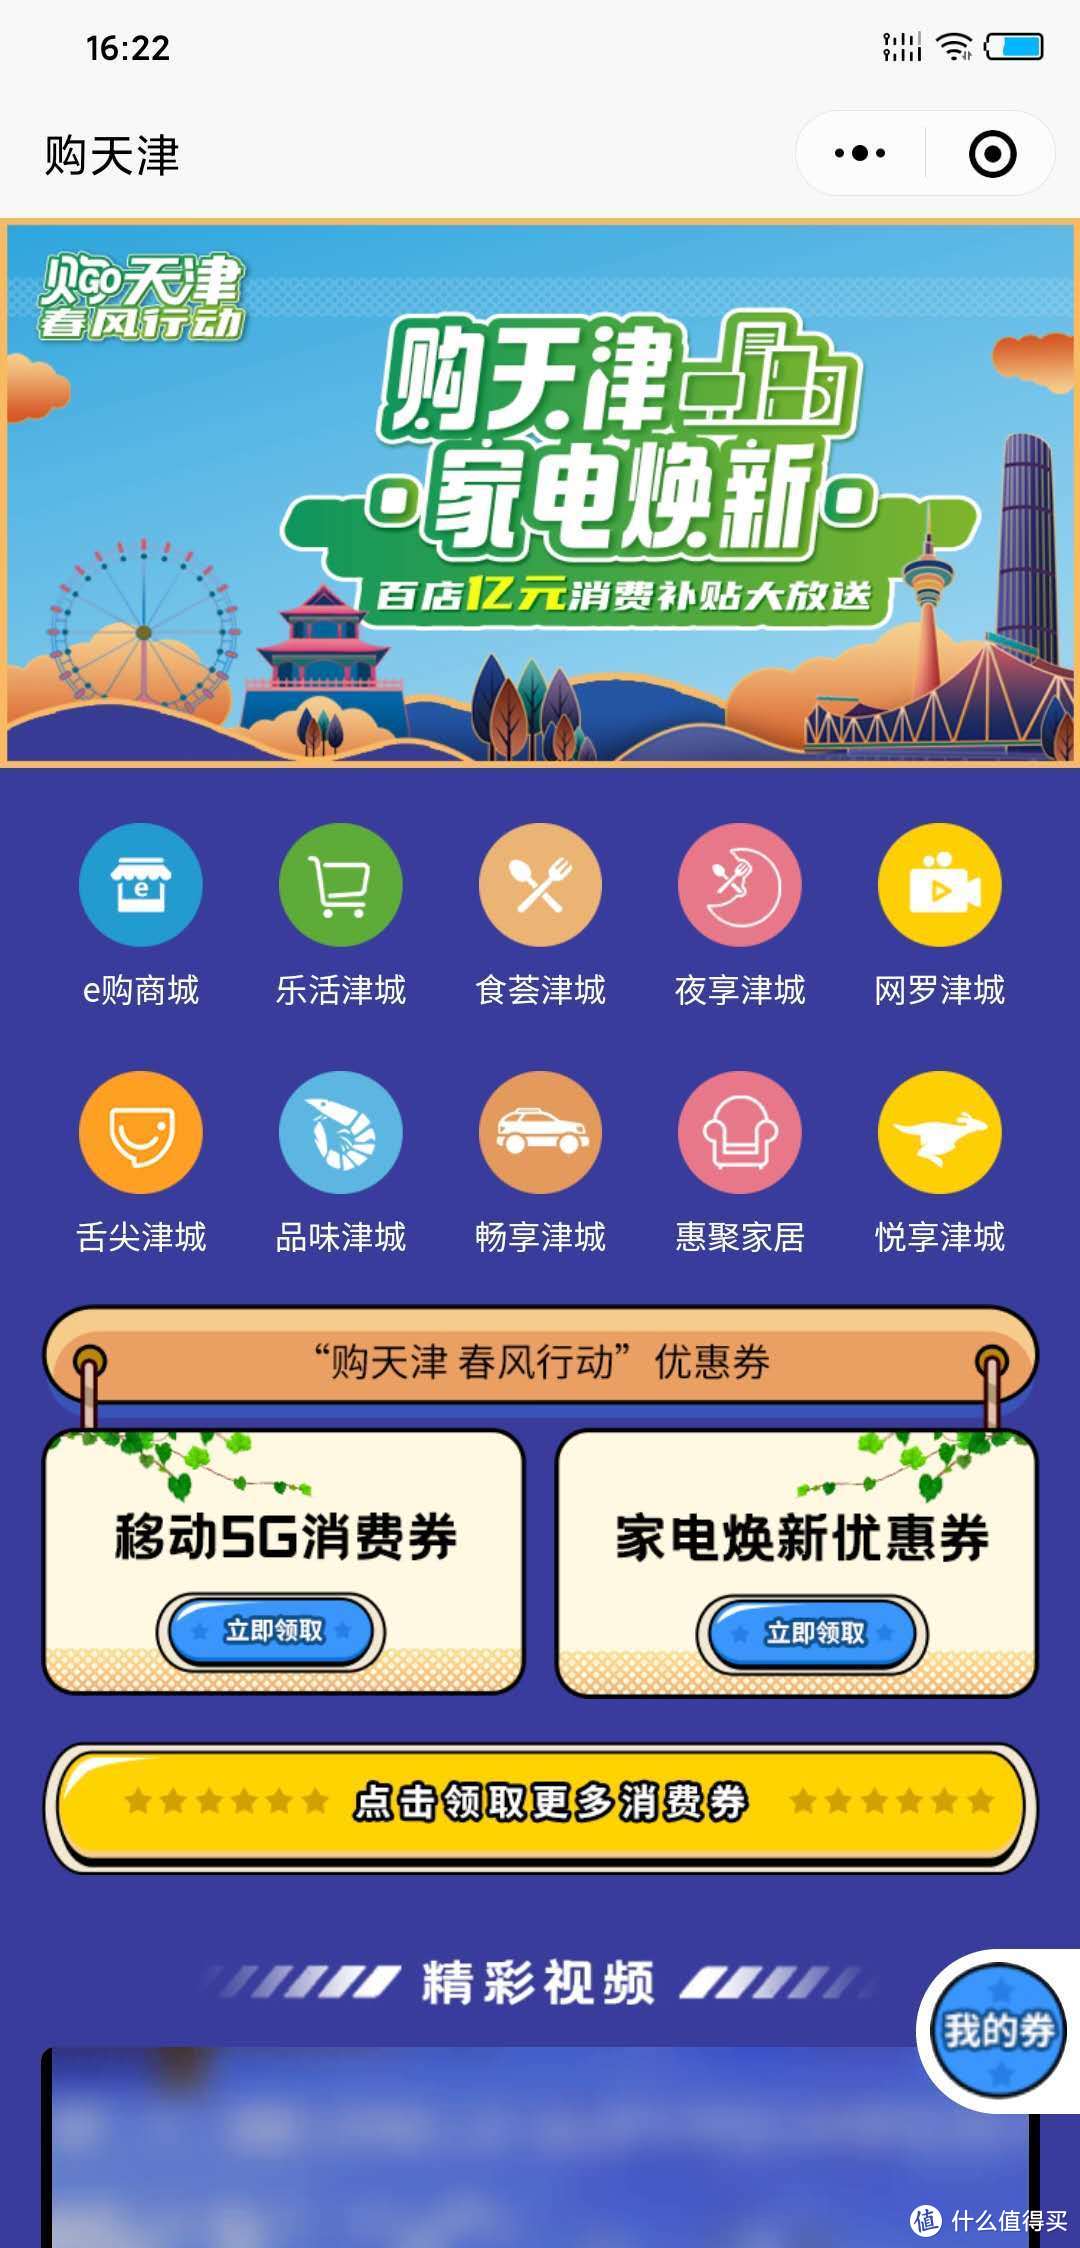 #值得一看的评测#天津移动5G手机消费券，让你轻松体验5G网络